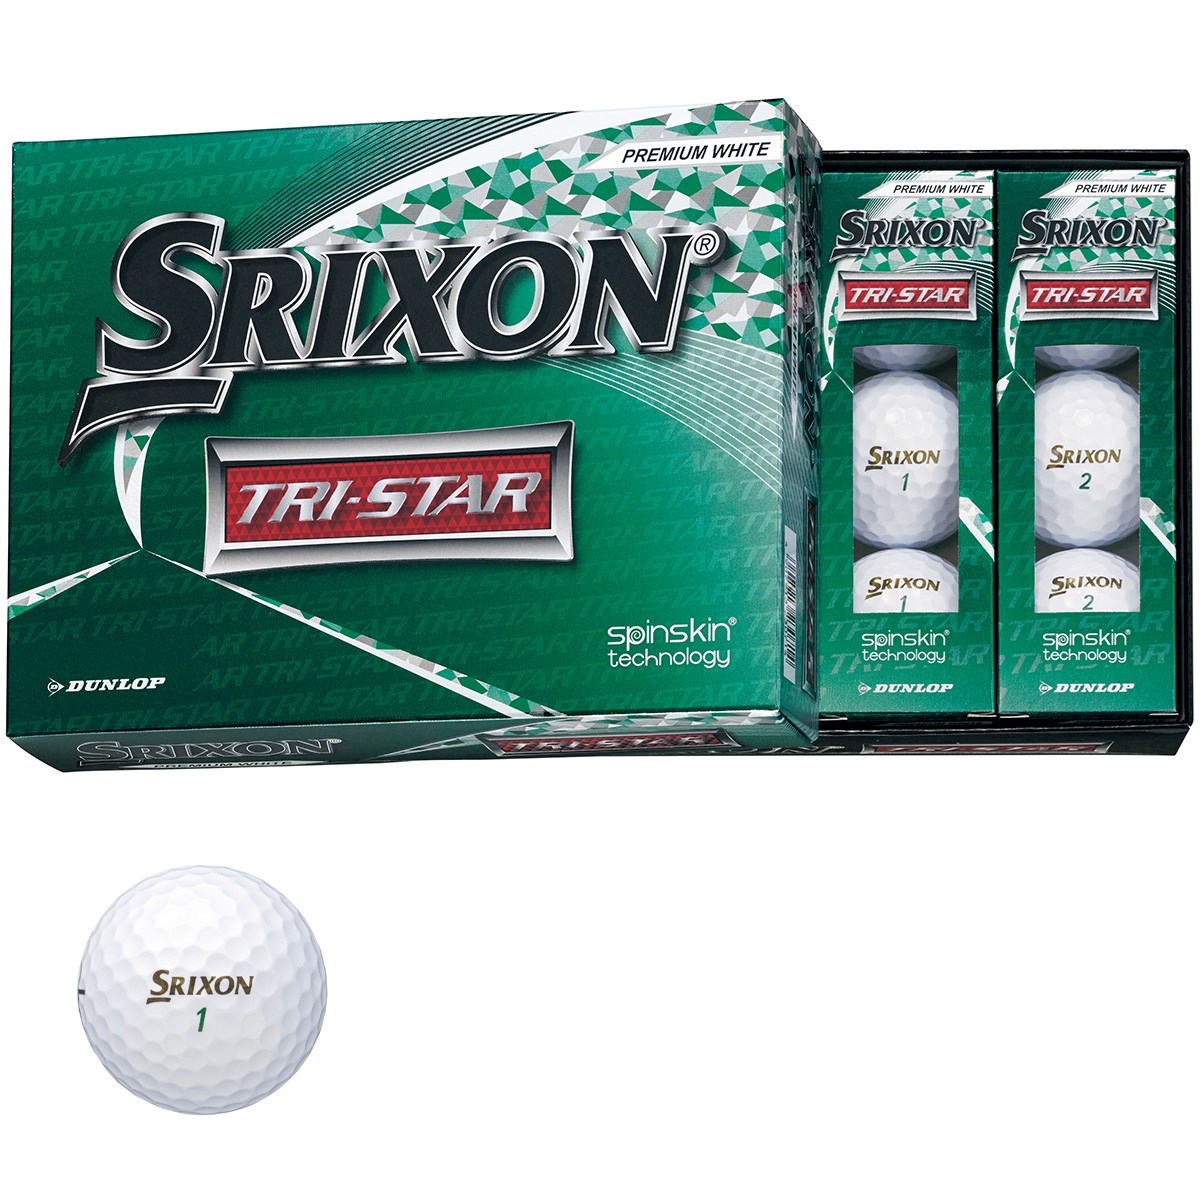 ダンロップ SRIXON スリクソン TRI-STAR 3 ボール 1ダース(12個入り) プレミアムホワイト